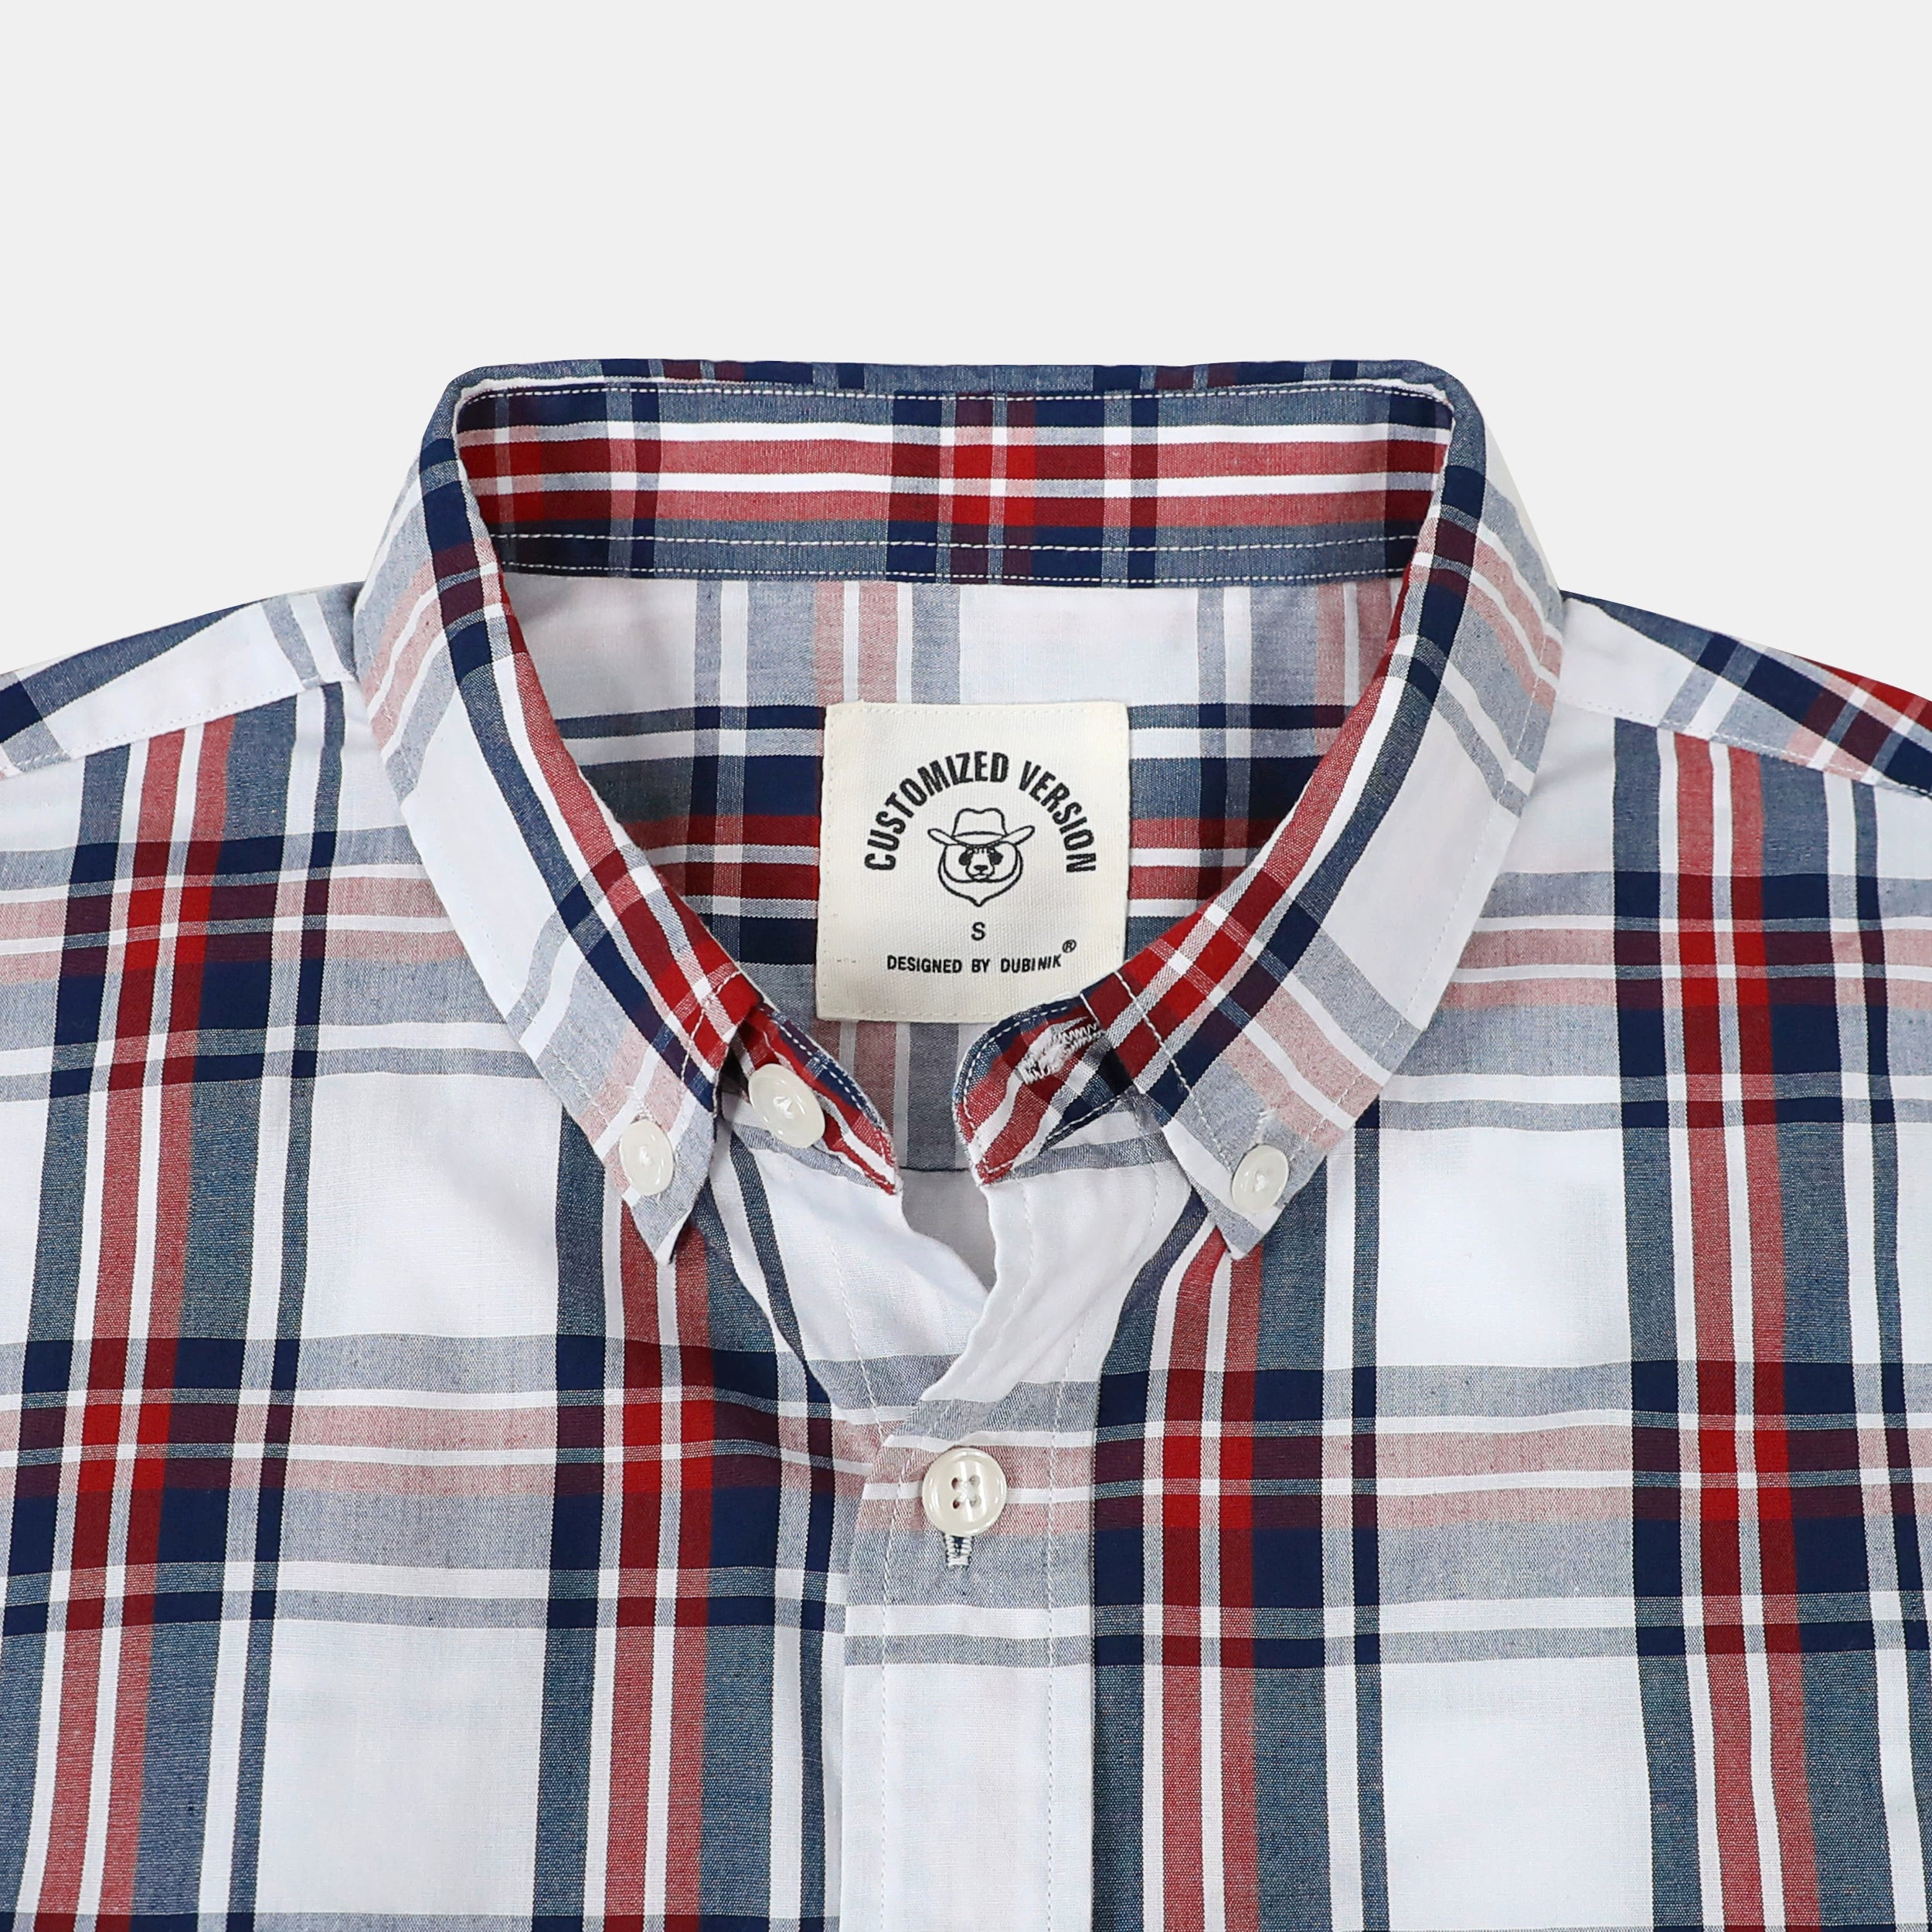 Dubinik® Mens Short Sleeve Button Down Shirts Summer Vintage Short Sleeve Button Down Men Lightweight Men's Casual Shirts#51025